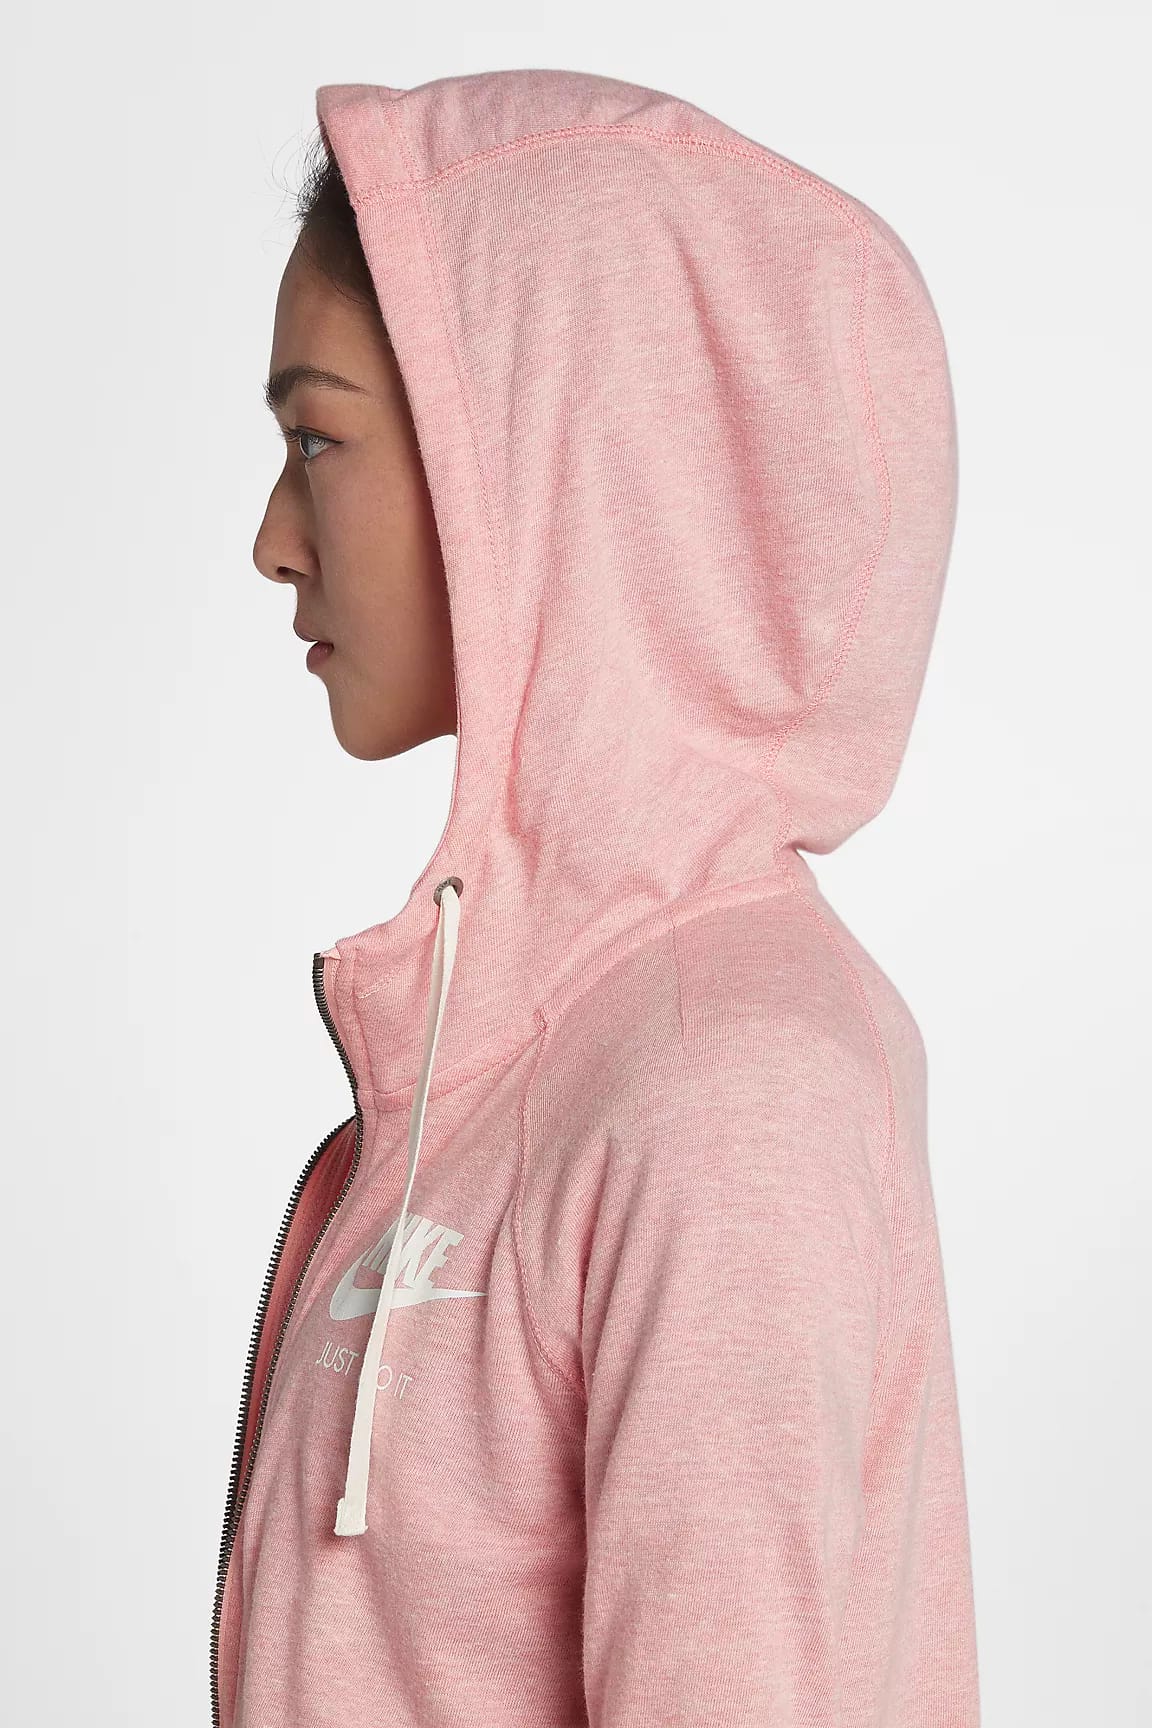 nike pink zip up hoodie